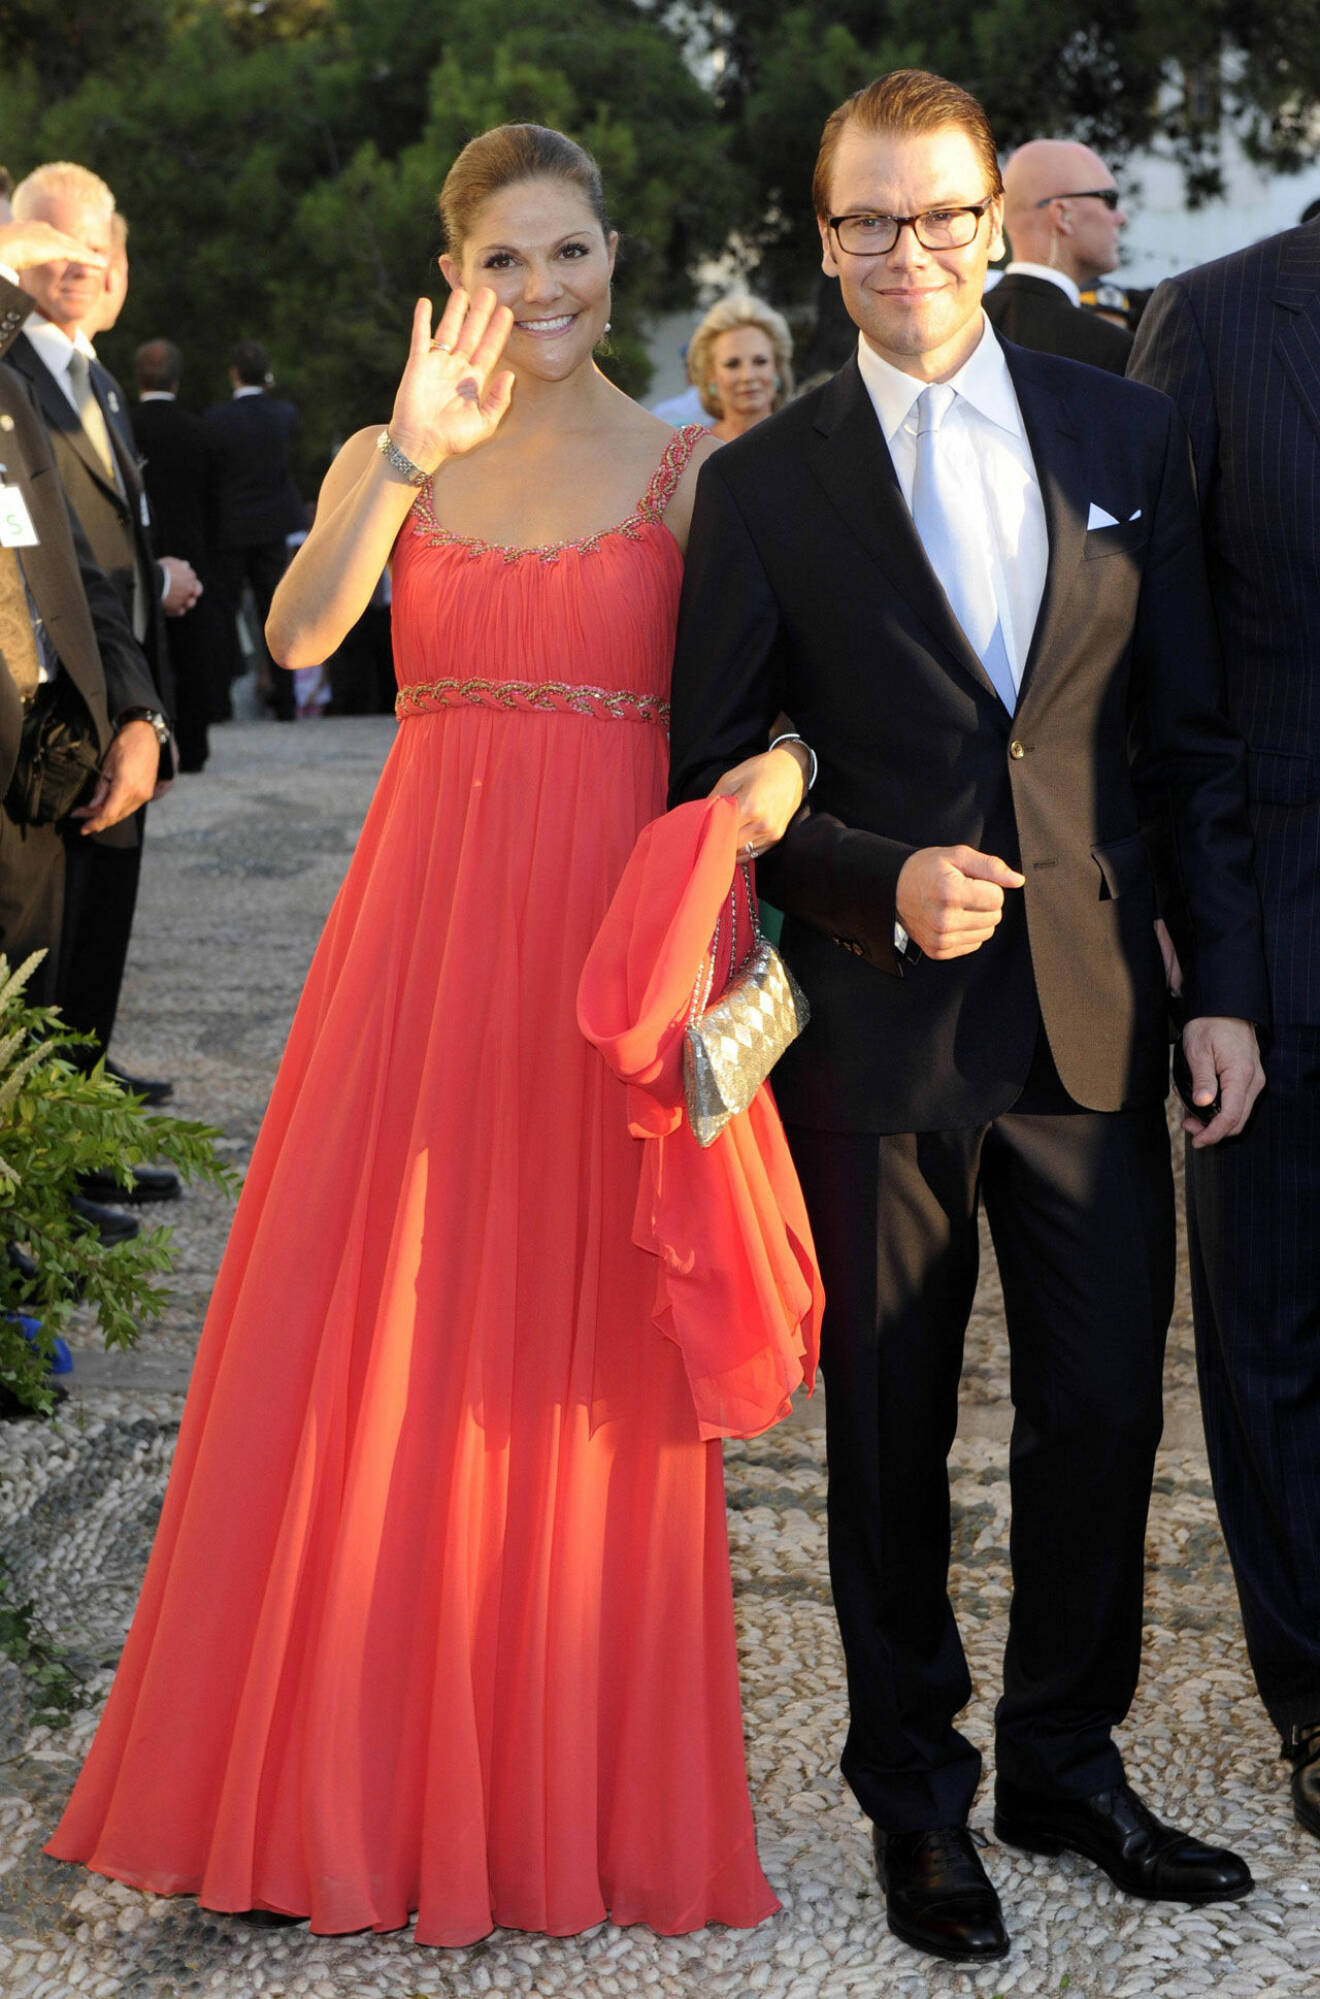 Kronprinsessan Victoria och prins Daniel var nygifta när de var självklara bröllopsgäster på grekiska prins-bröllopet.